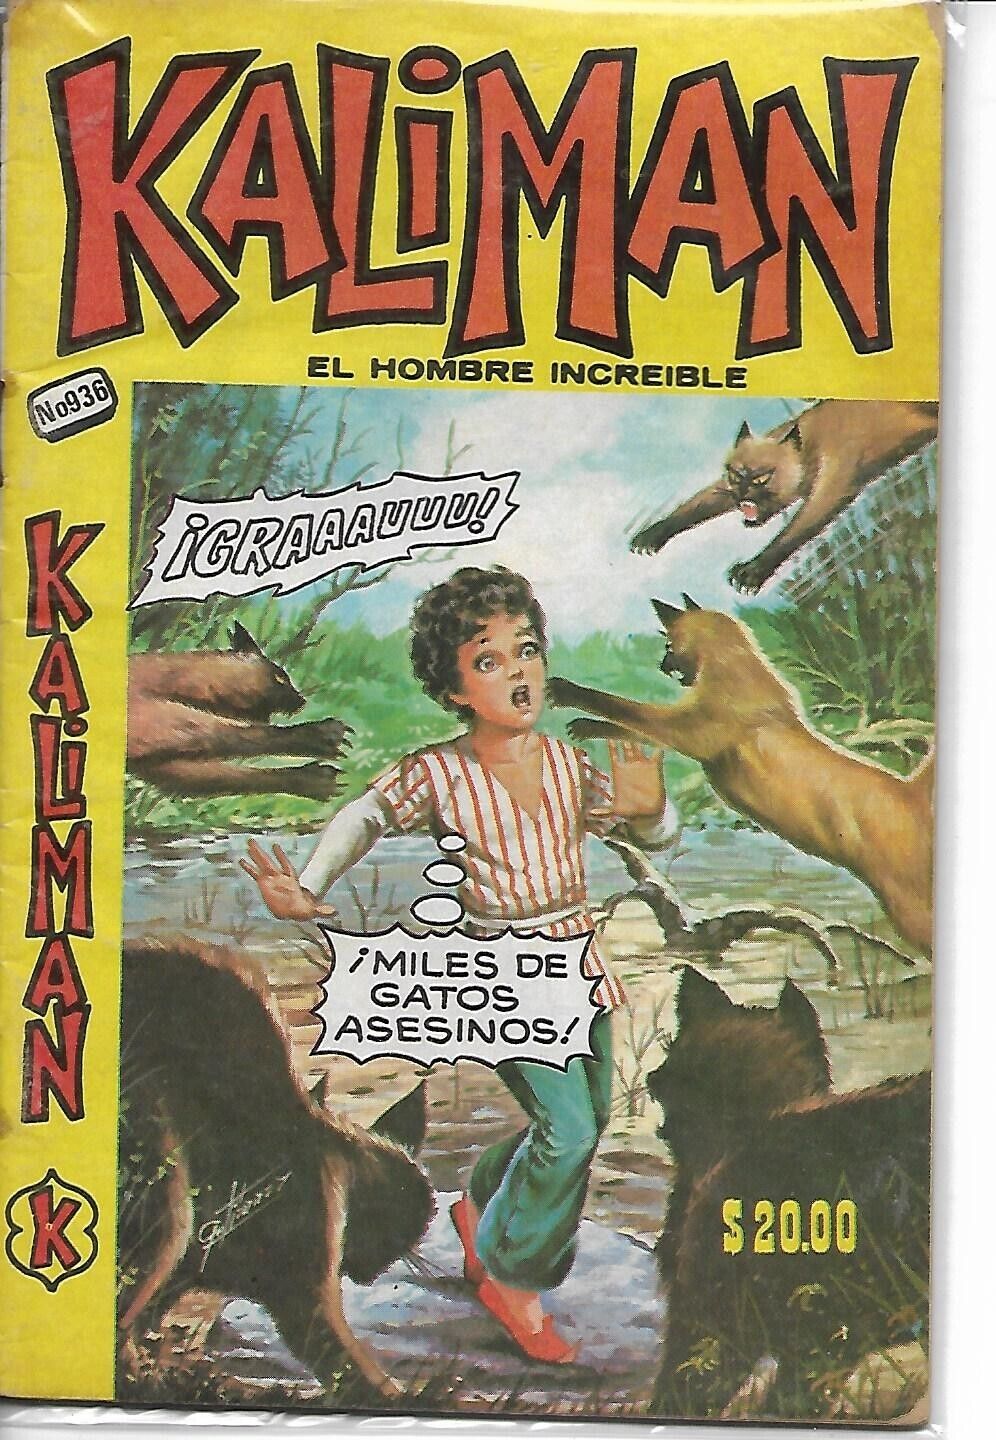 Kaliman El Hombre Increible #936 - Noviembre 4, 1983 - Mexico